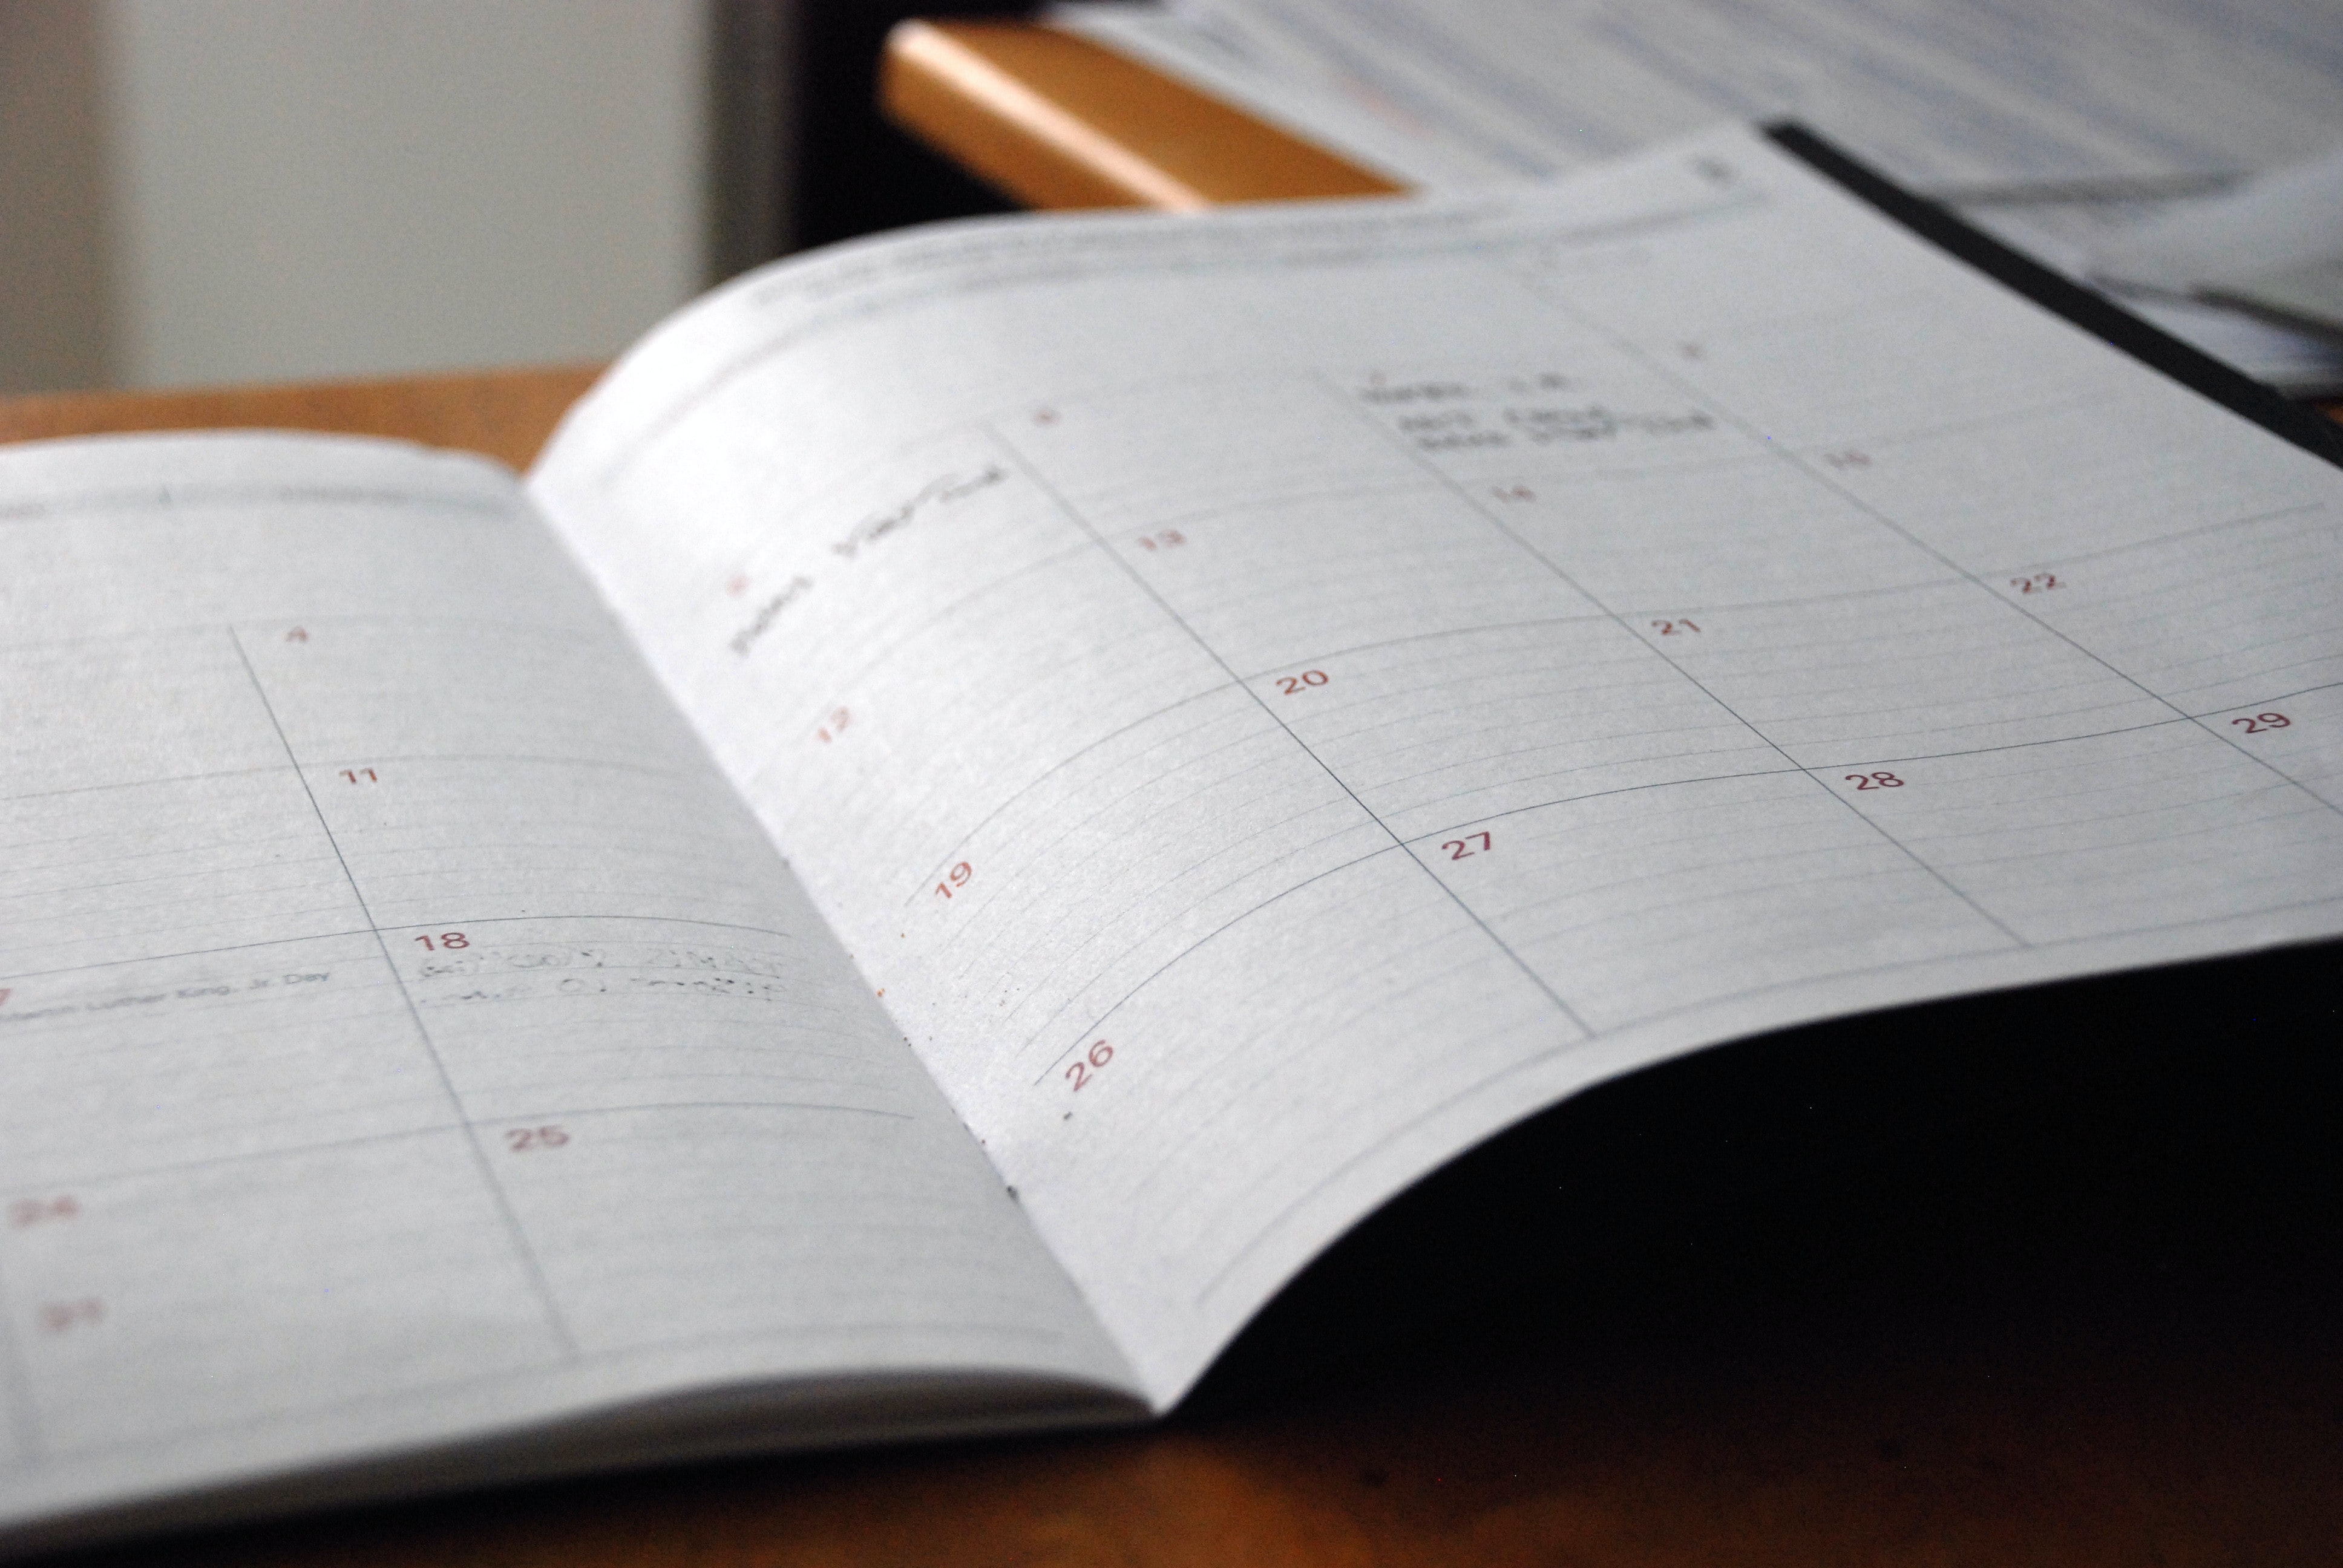 photo of a calendar book open to a monthly calendar